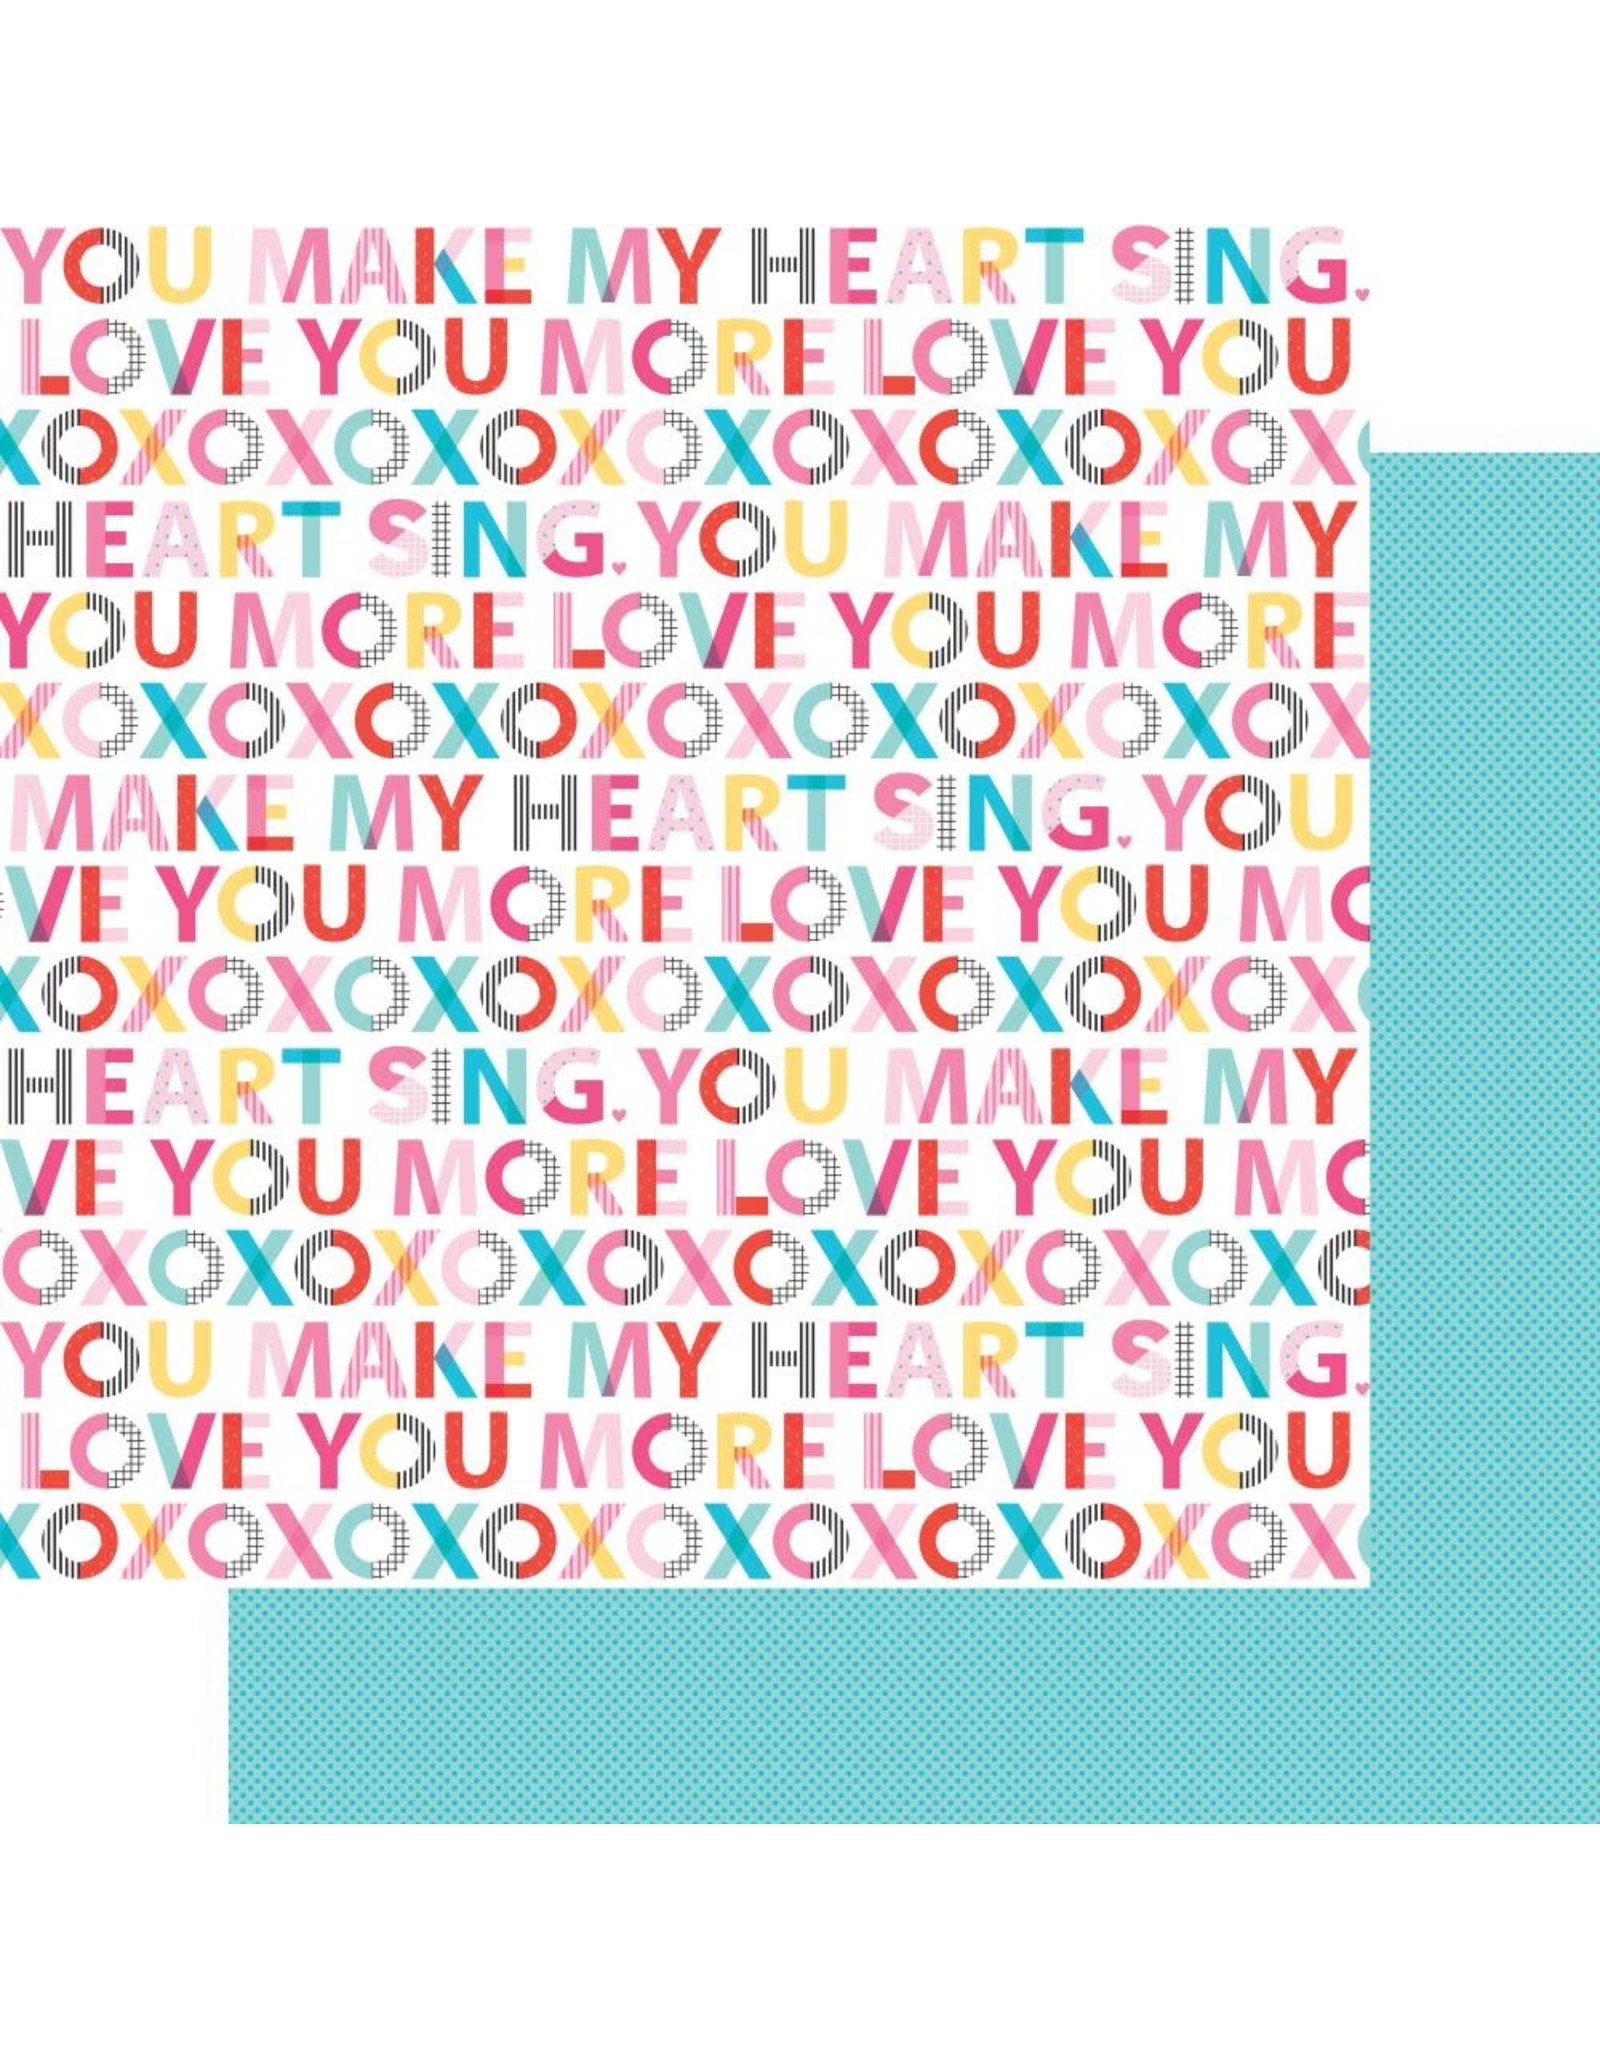 BELLA BLVD BELLA BLVD OUR LOVE SONG XOXO 12x12 CARDSTOCK